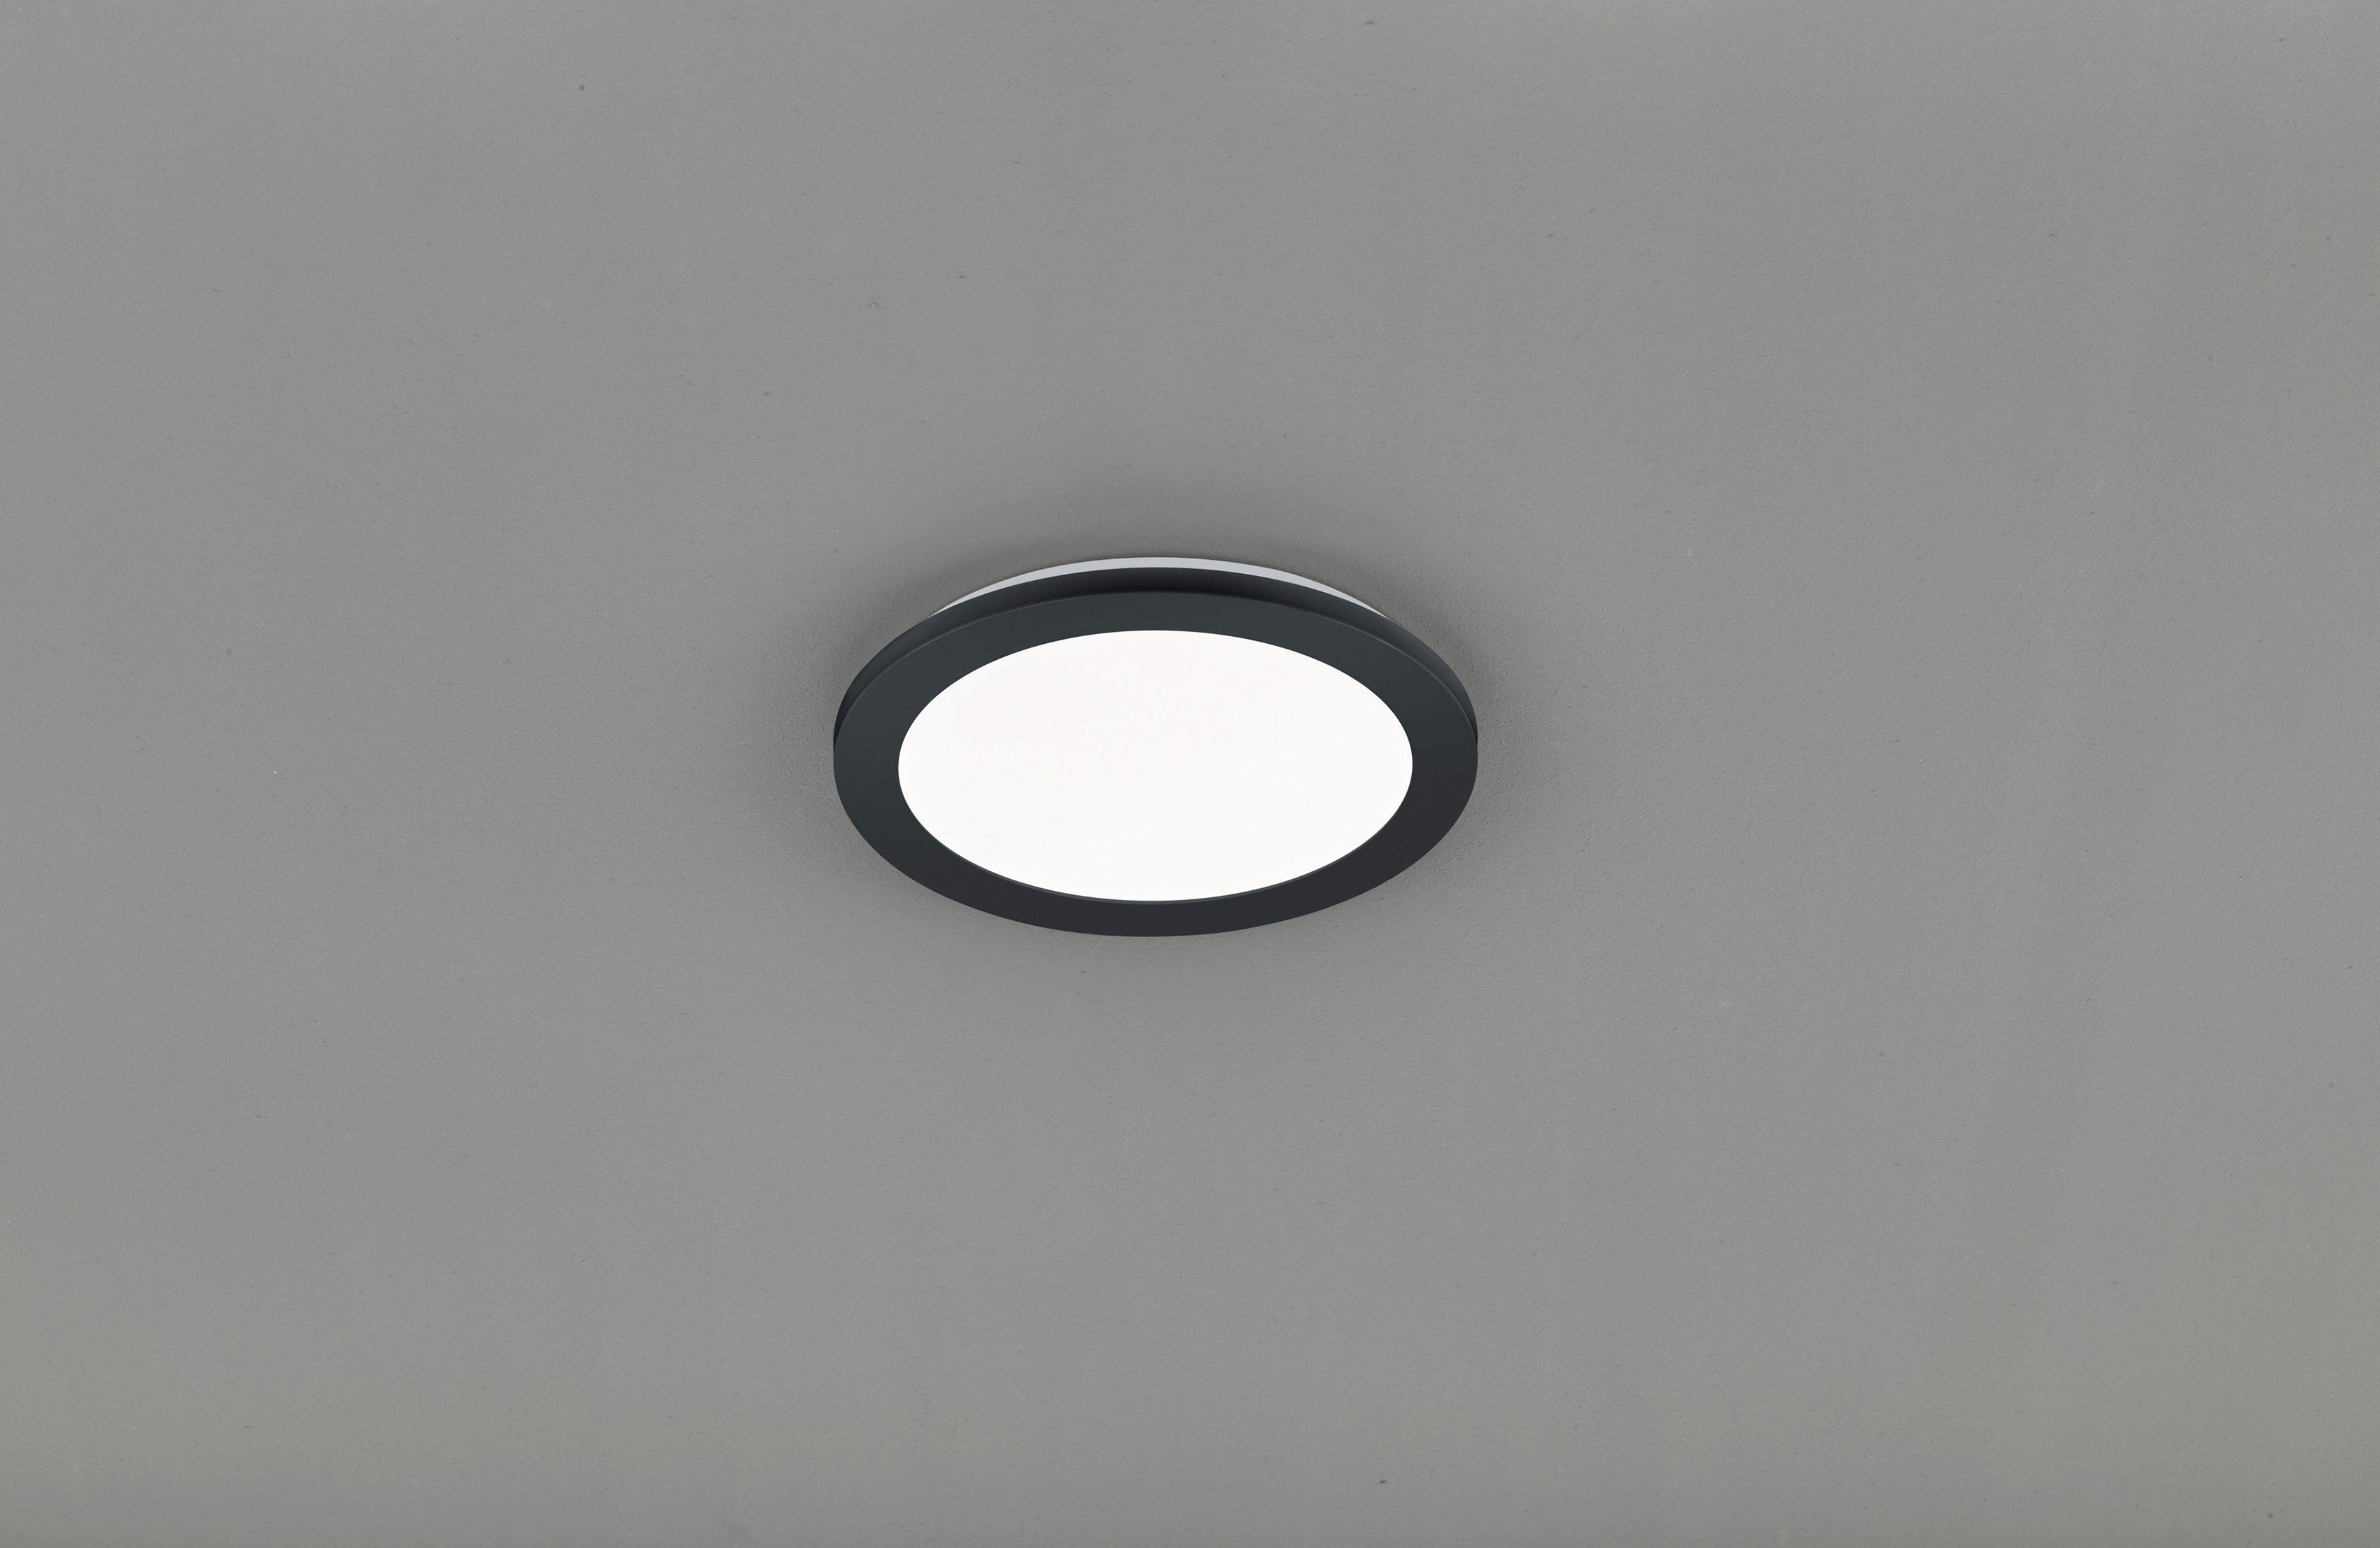 TRIO Leuchten LED Deckenleuchte Camillus, LED fest integriert, Warmweiß,  matt schwarz Switch Dimmer, warmweiß 3000 K, Badezimmer geeignet, IP44,  bequem über den Wandschalter in 3 Stufen dimmbar (Switch Dimmer)